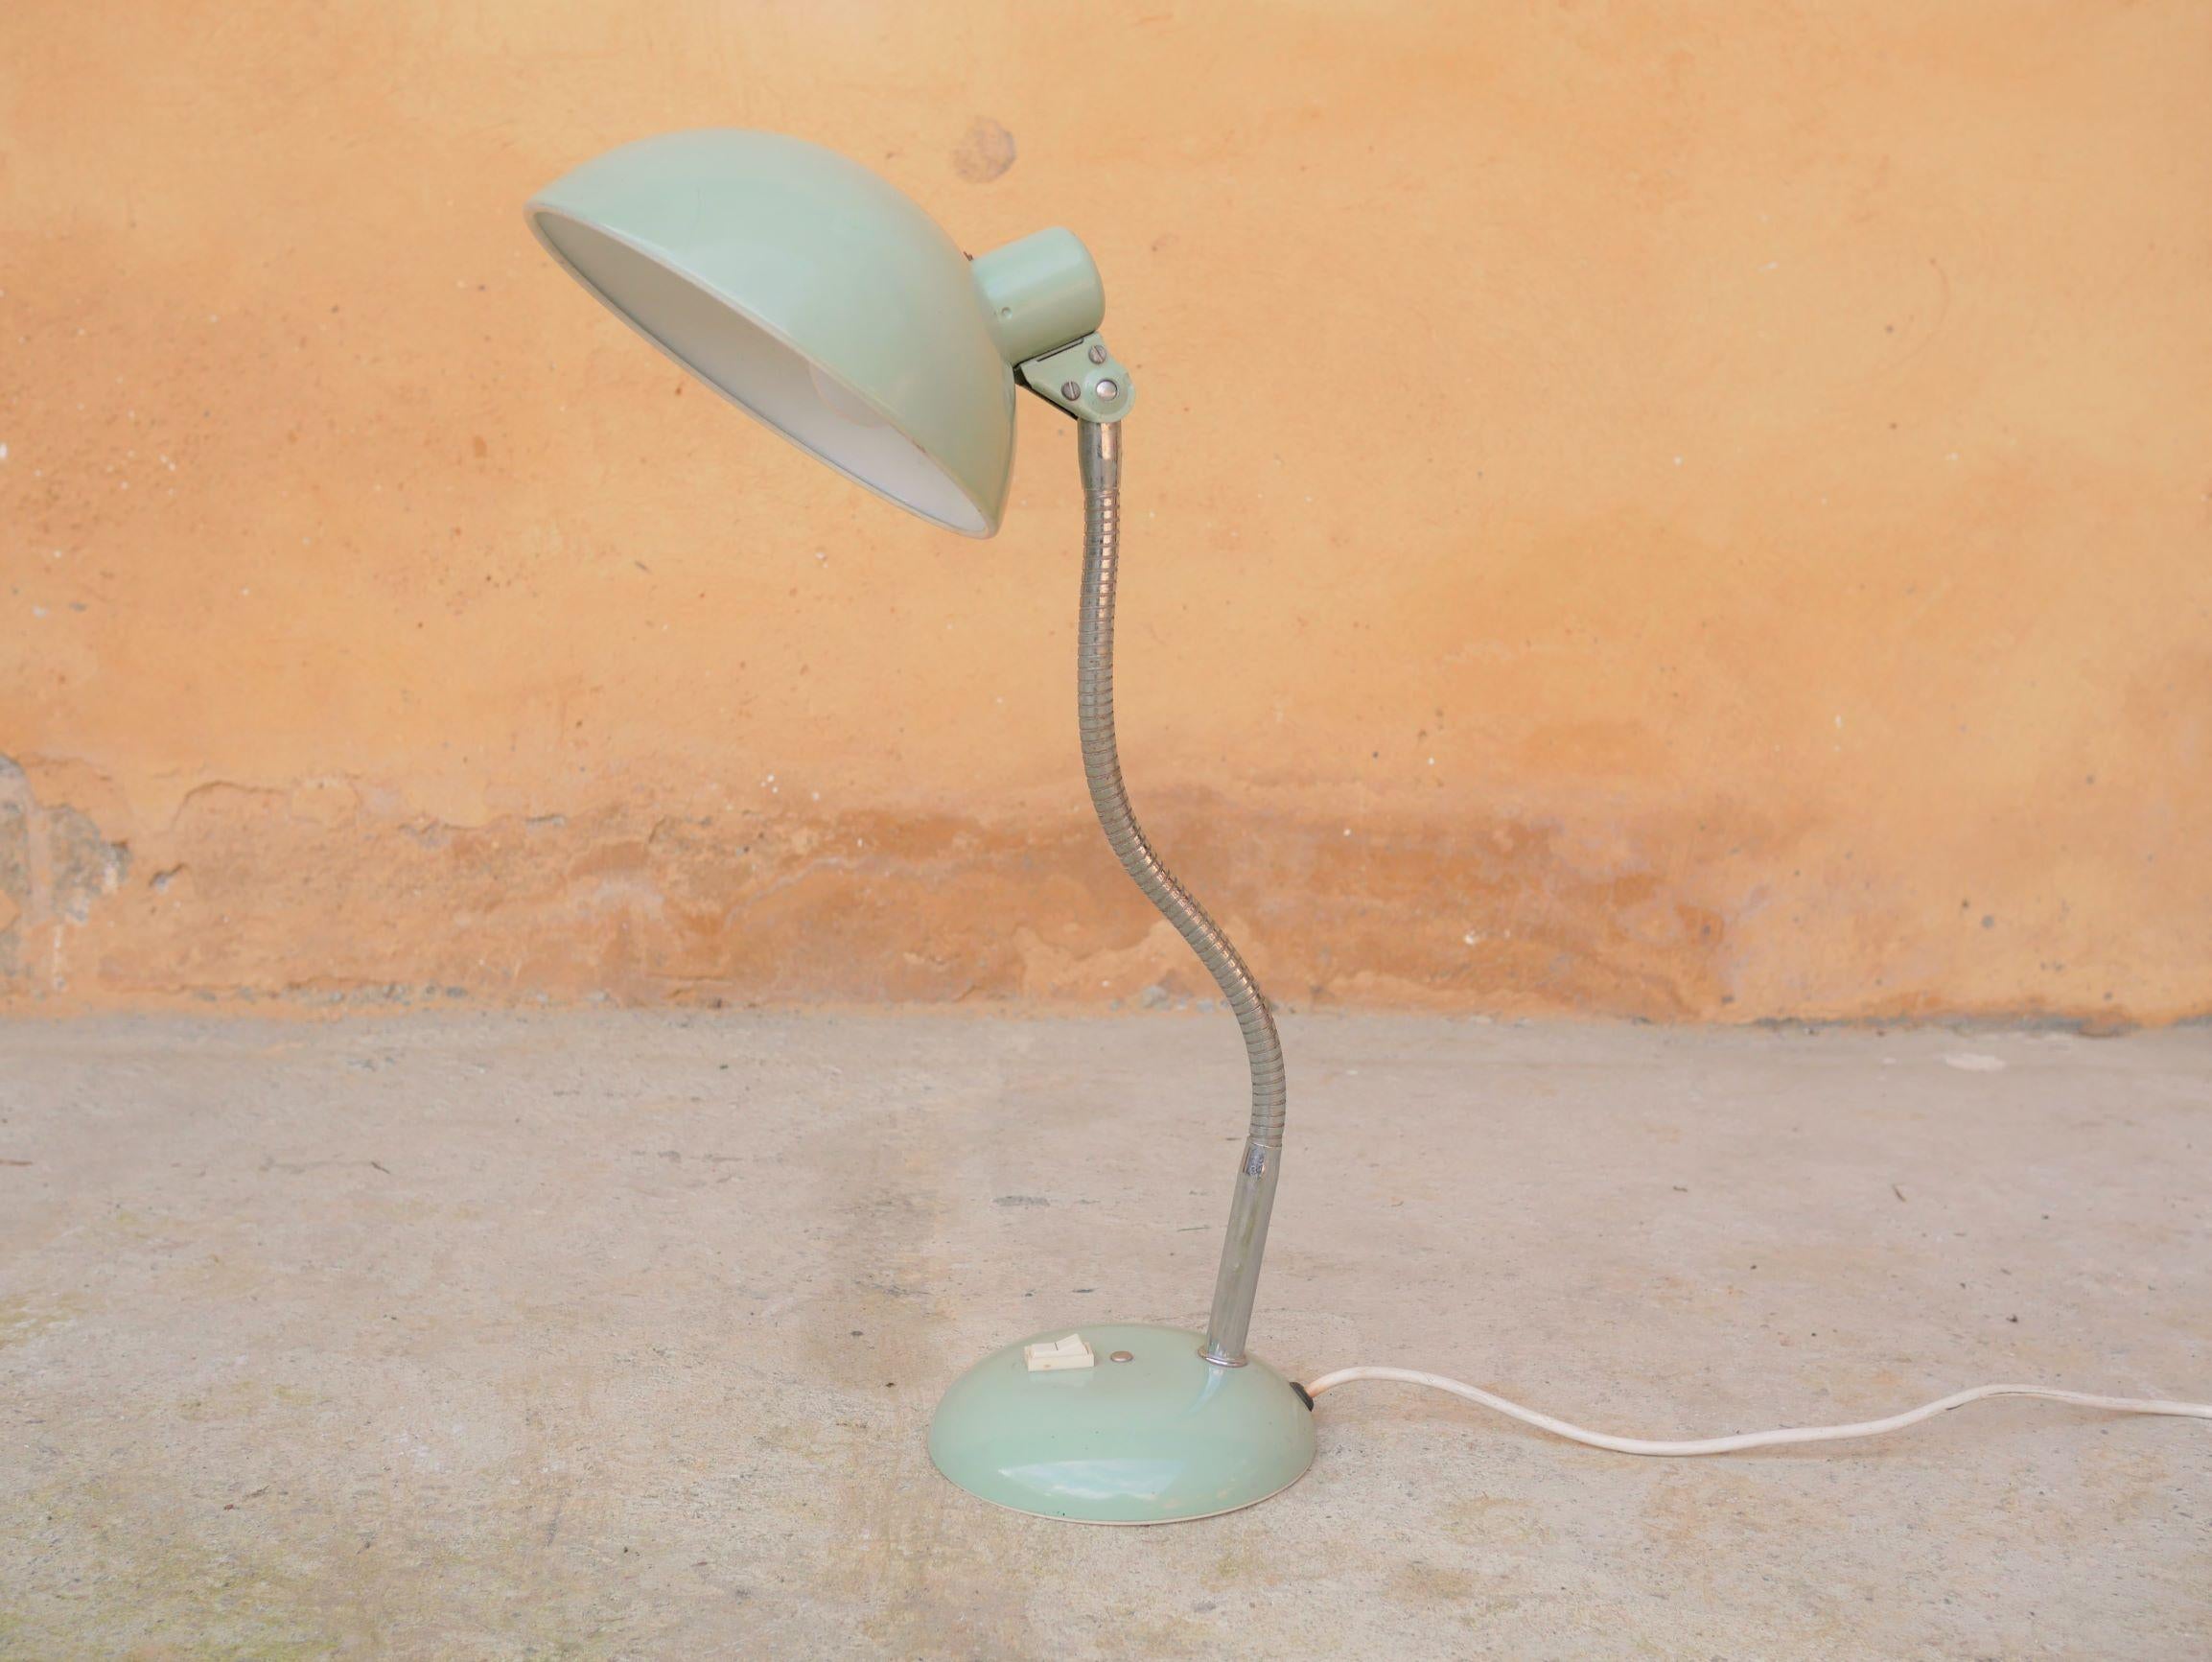 Lampe de bureau réglable en métal vert d'eau des années 1950.

Son design rappelle les lampes conçues par le designer français Serge Mouille.
Jolie, de belle taille, chaleureuse et fonctionnelle, elle apportera sa touche rétro et tendance. Elle a un